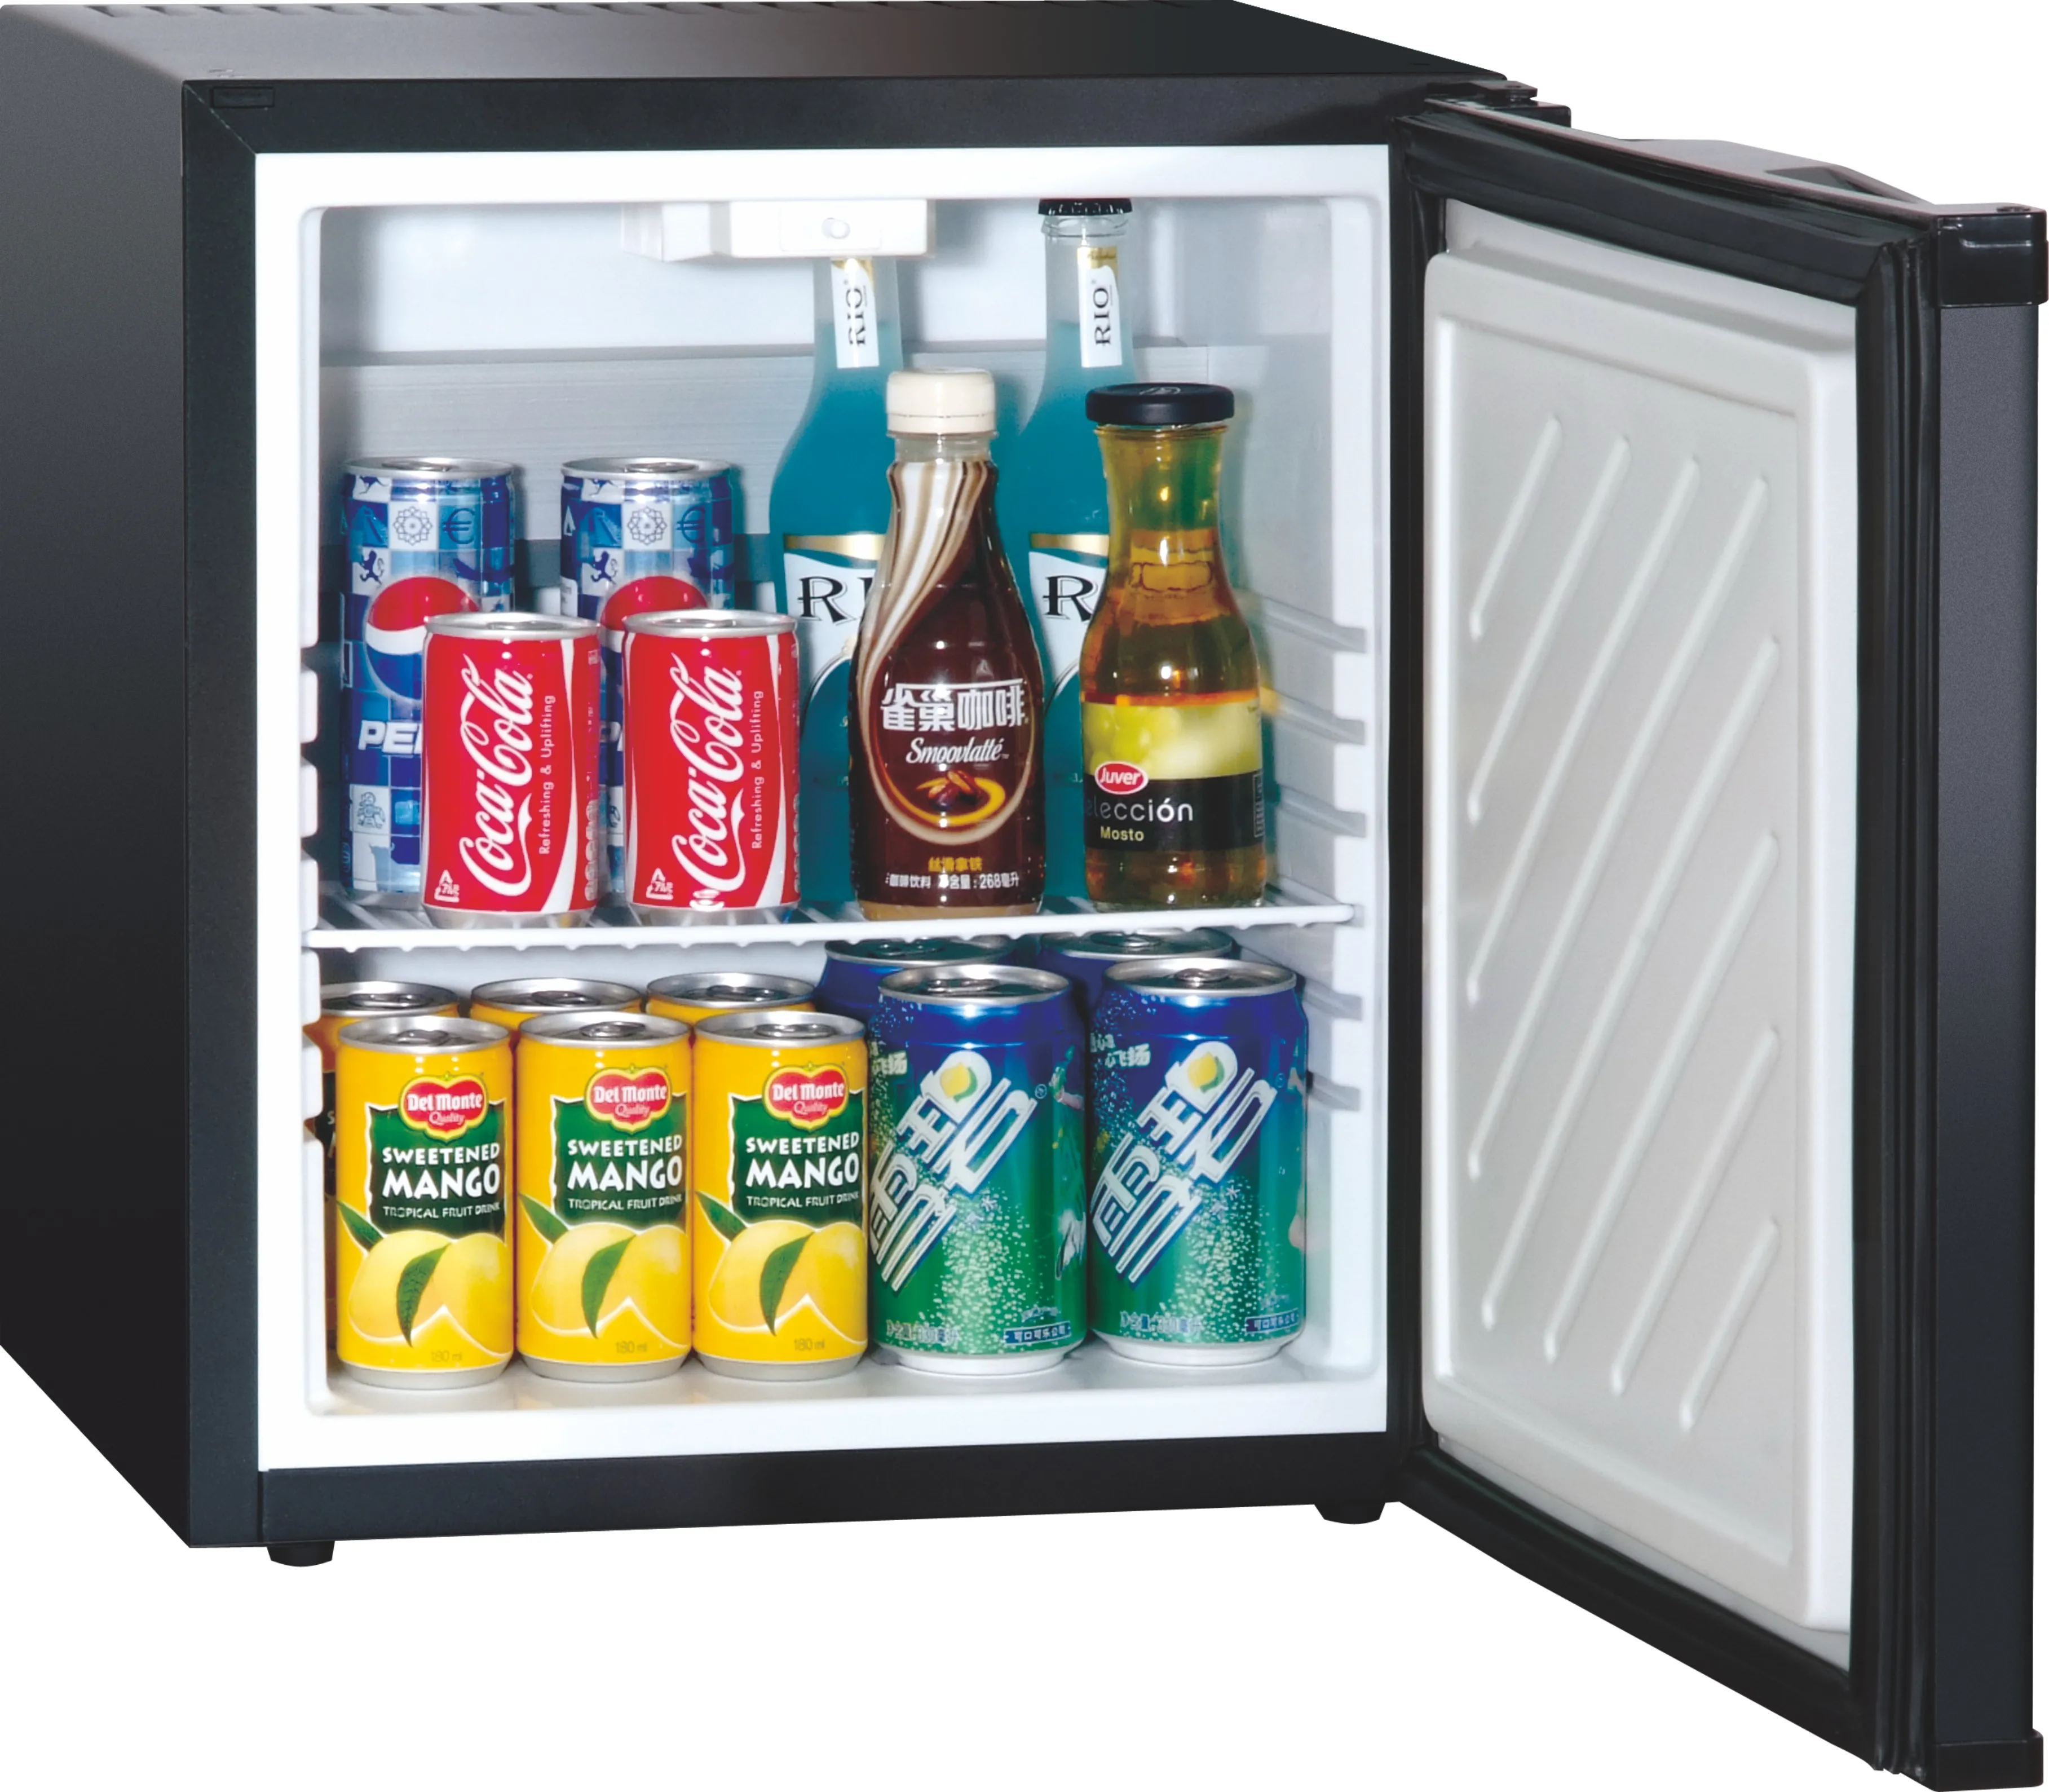 Mini nevera con compartimento para congelador, sobremesa, refrigerador,  modelo compacto, energía, de una sola puerta, mini nevera (color blanco)